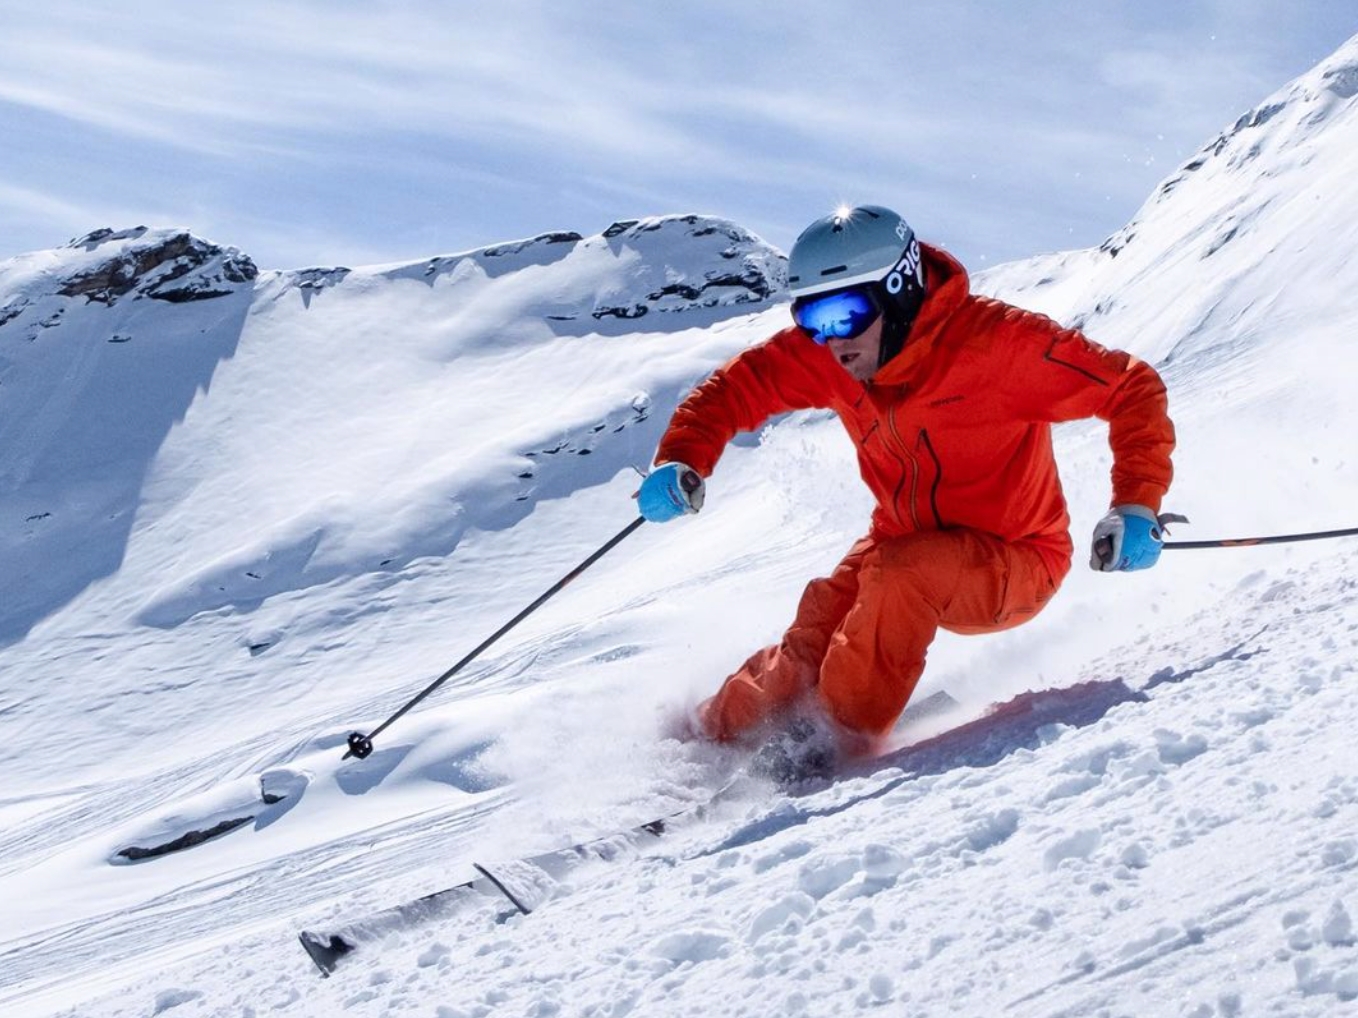 C'est Très Chic: Top 10 Après Ski Clothing